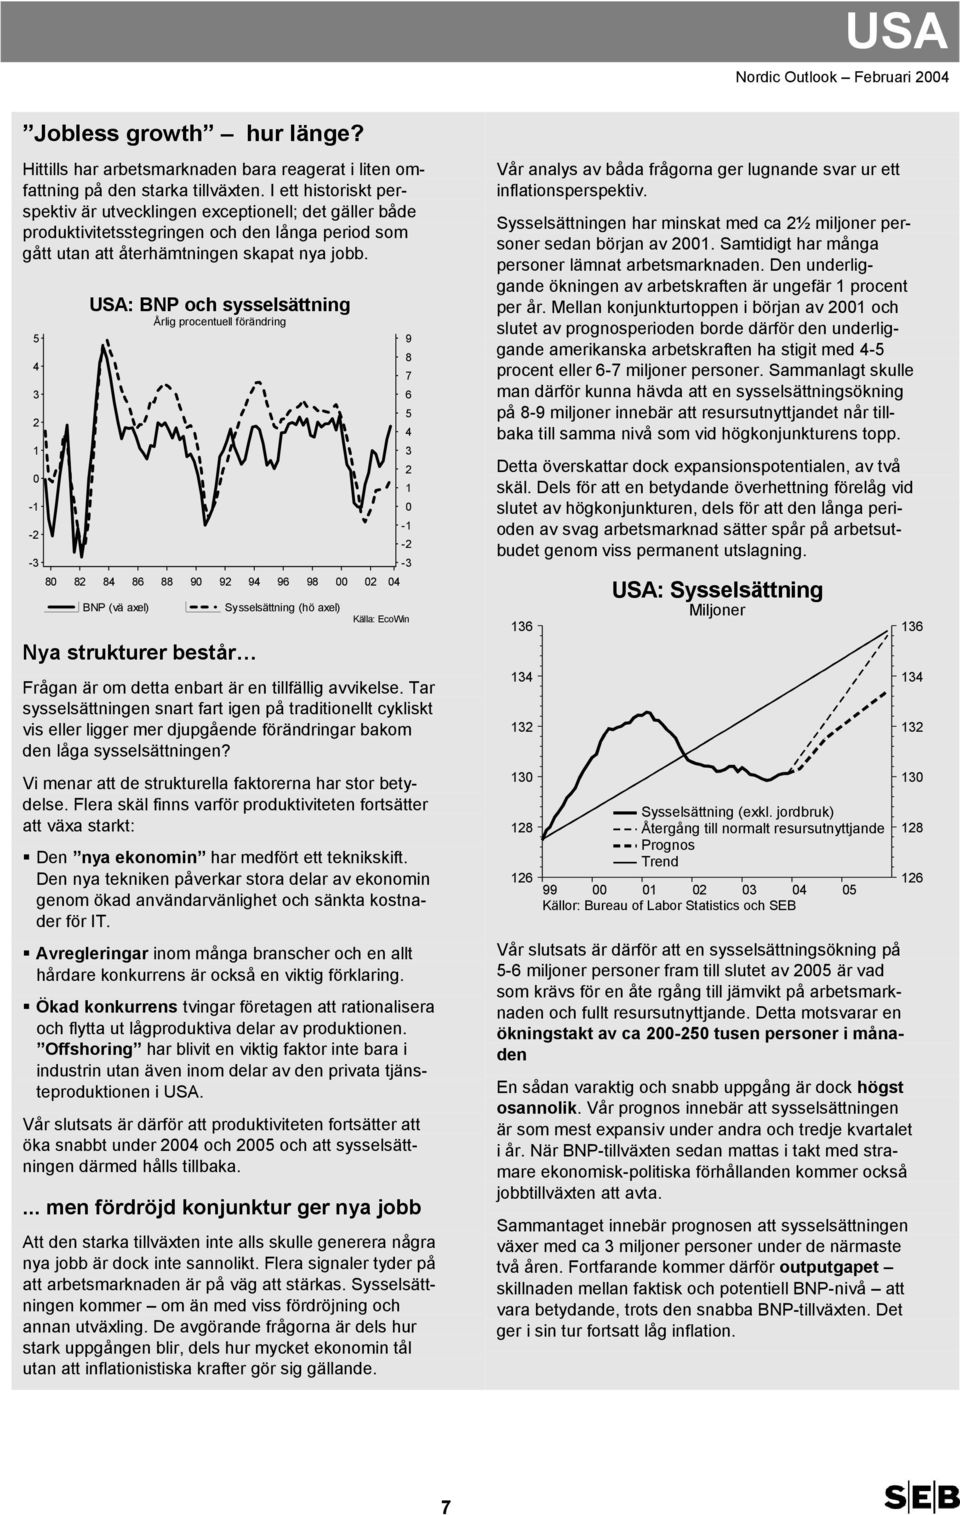 - - - USA: BNP och sysselsättning 8 8 8 8 88 9 9 9 9 98 BNP (vä axel) Sysselsättning (hö axel) Nya strukturer består Källa: EcoWin Frågan är om detta enbart är en tillfällig avvikelse.